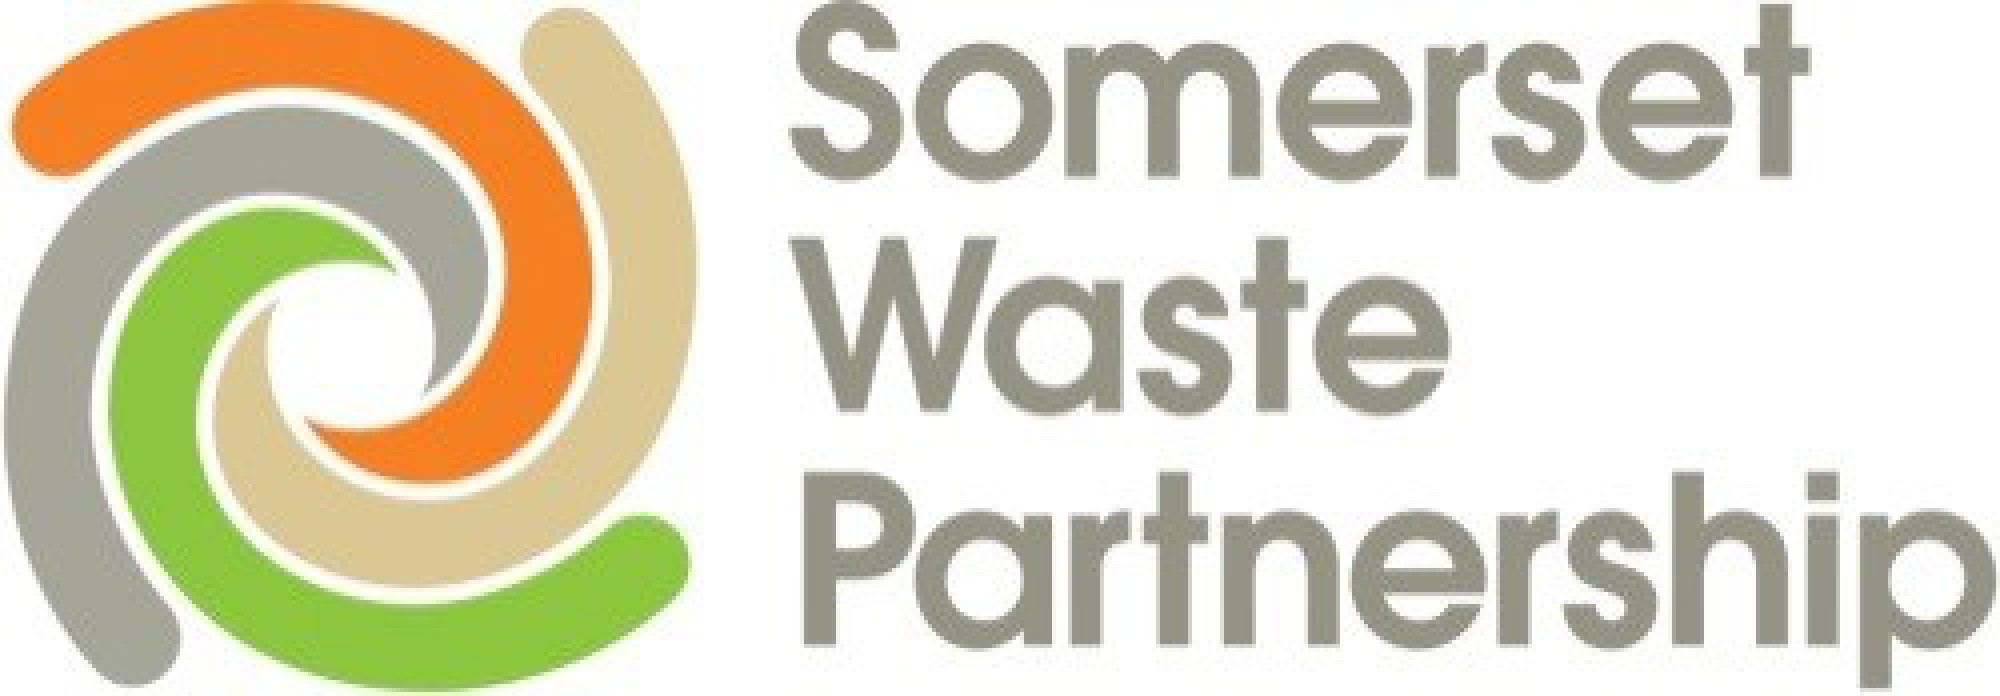 SWP Member Briefing: Somerset Food Waste Week